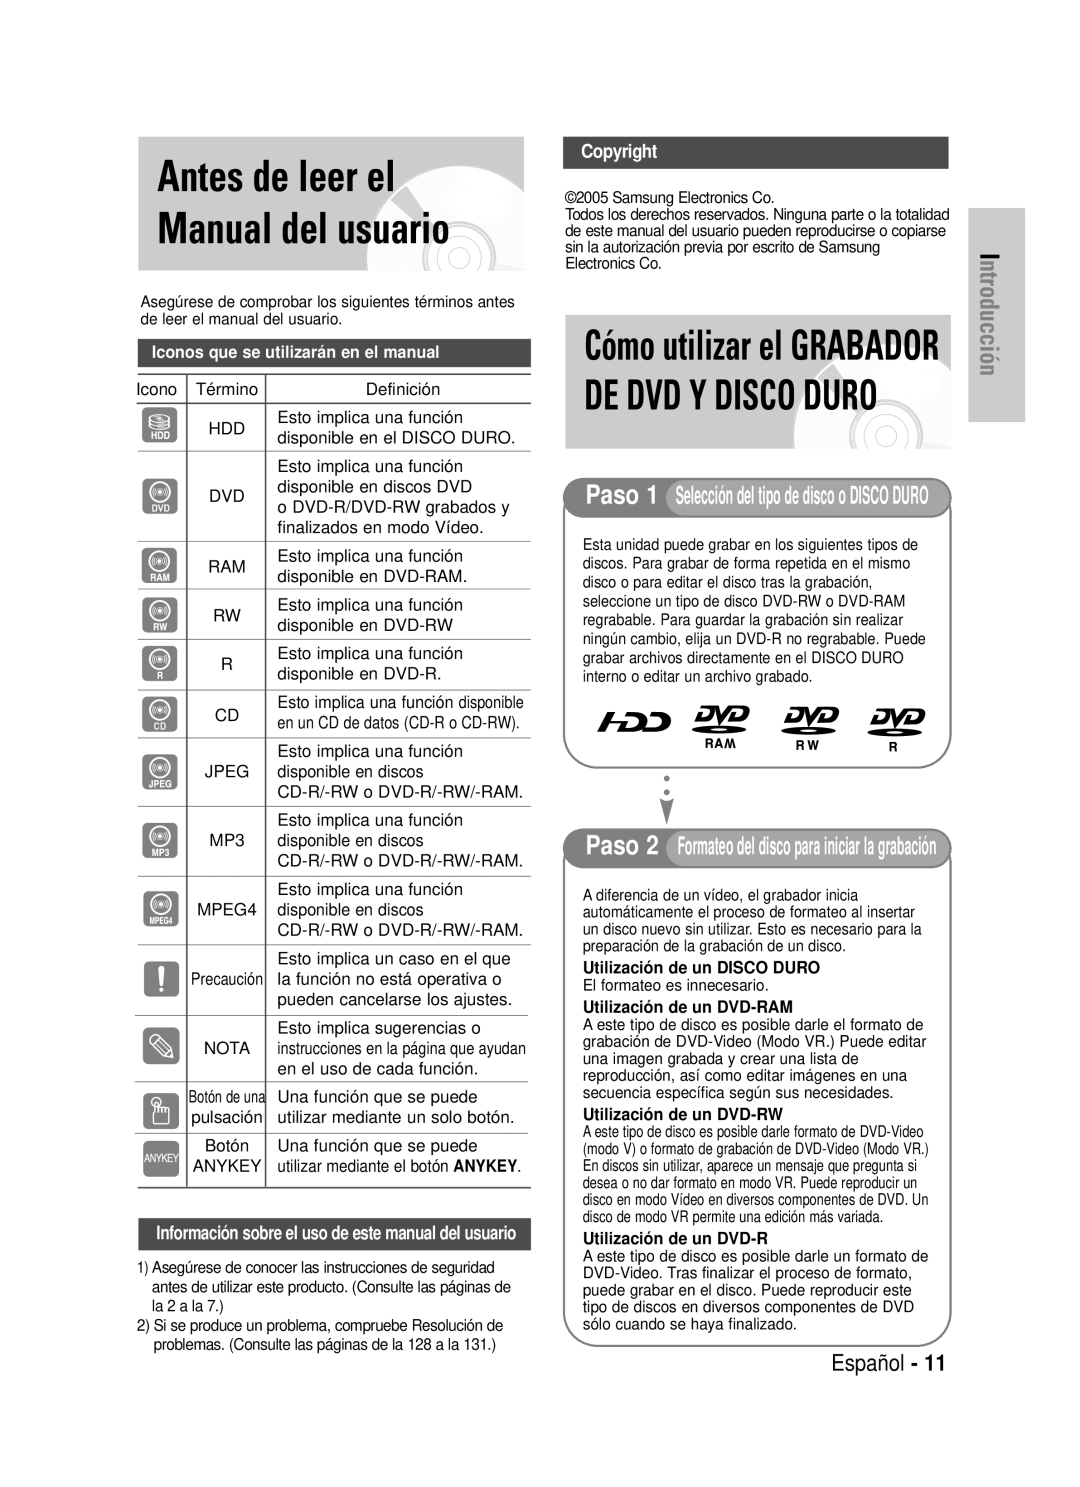 Samsung DVD-HR725/XEU manual Antes de leer el Manual del usuario, De Dvd Y Disco Duro, Cómo utilizar el GRABADOR, Copyright 